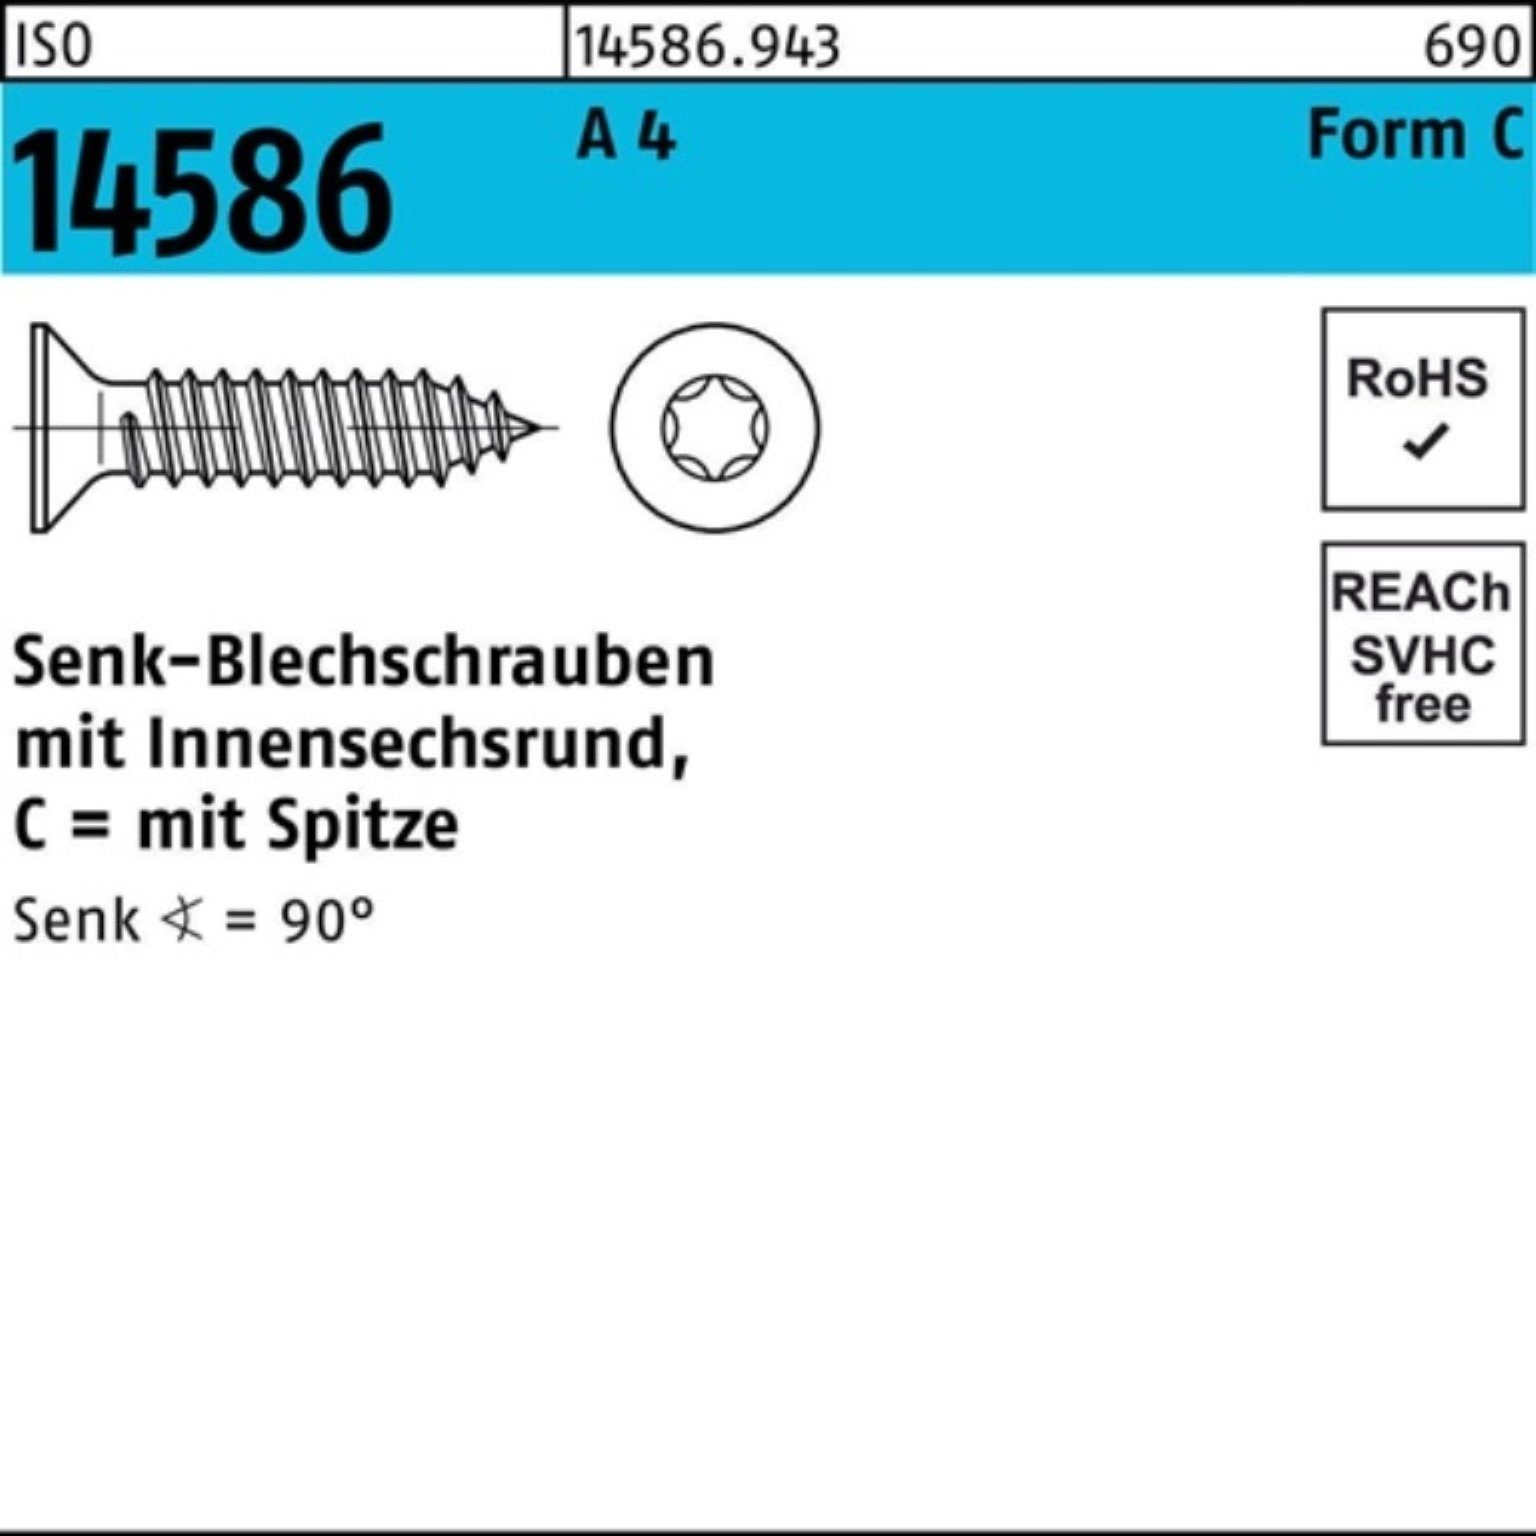 Reyher Schraube 500er Pack Senkblechschraube 4 14586 3,9x ISO A 500 ISR/Spitze 22-T15